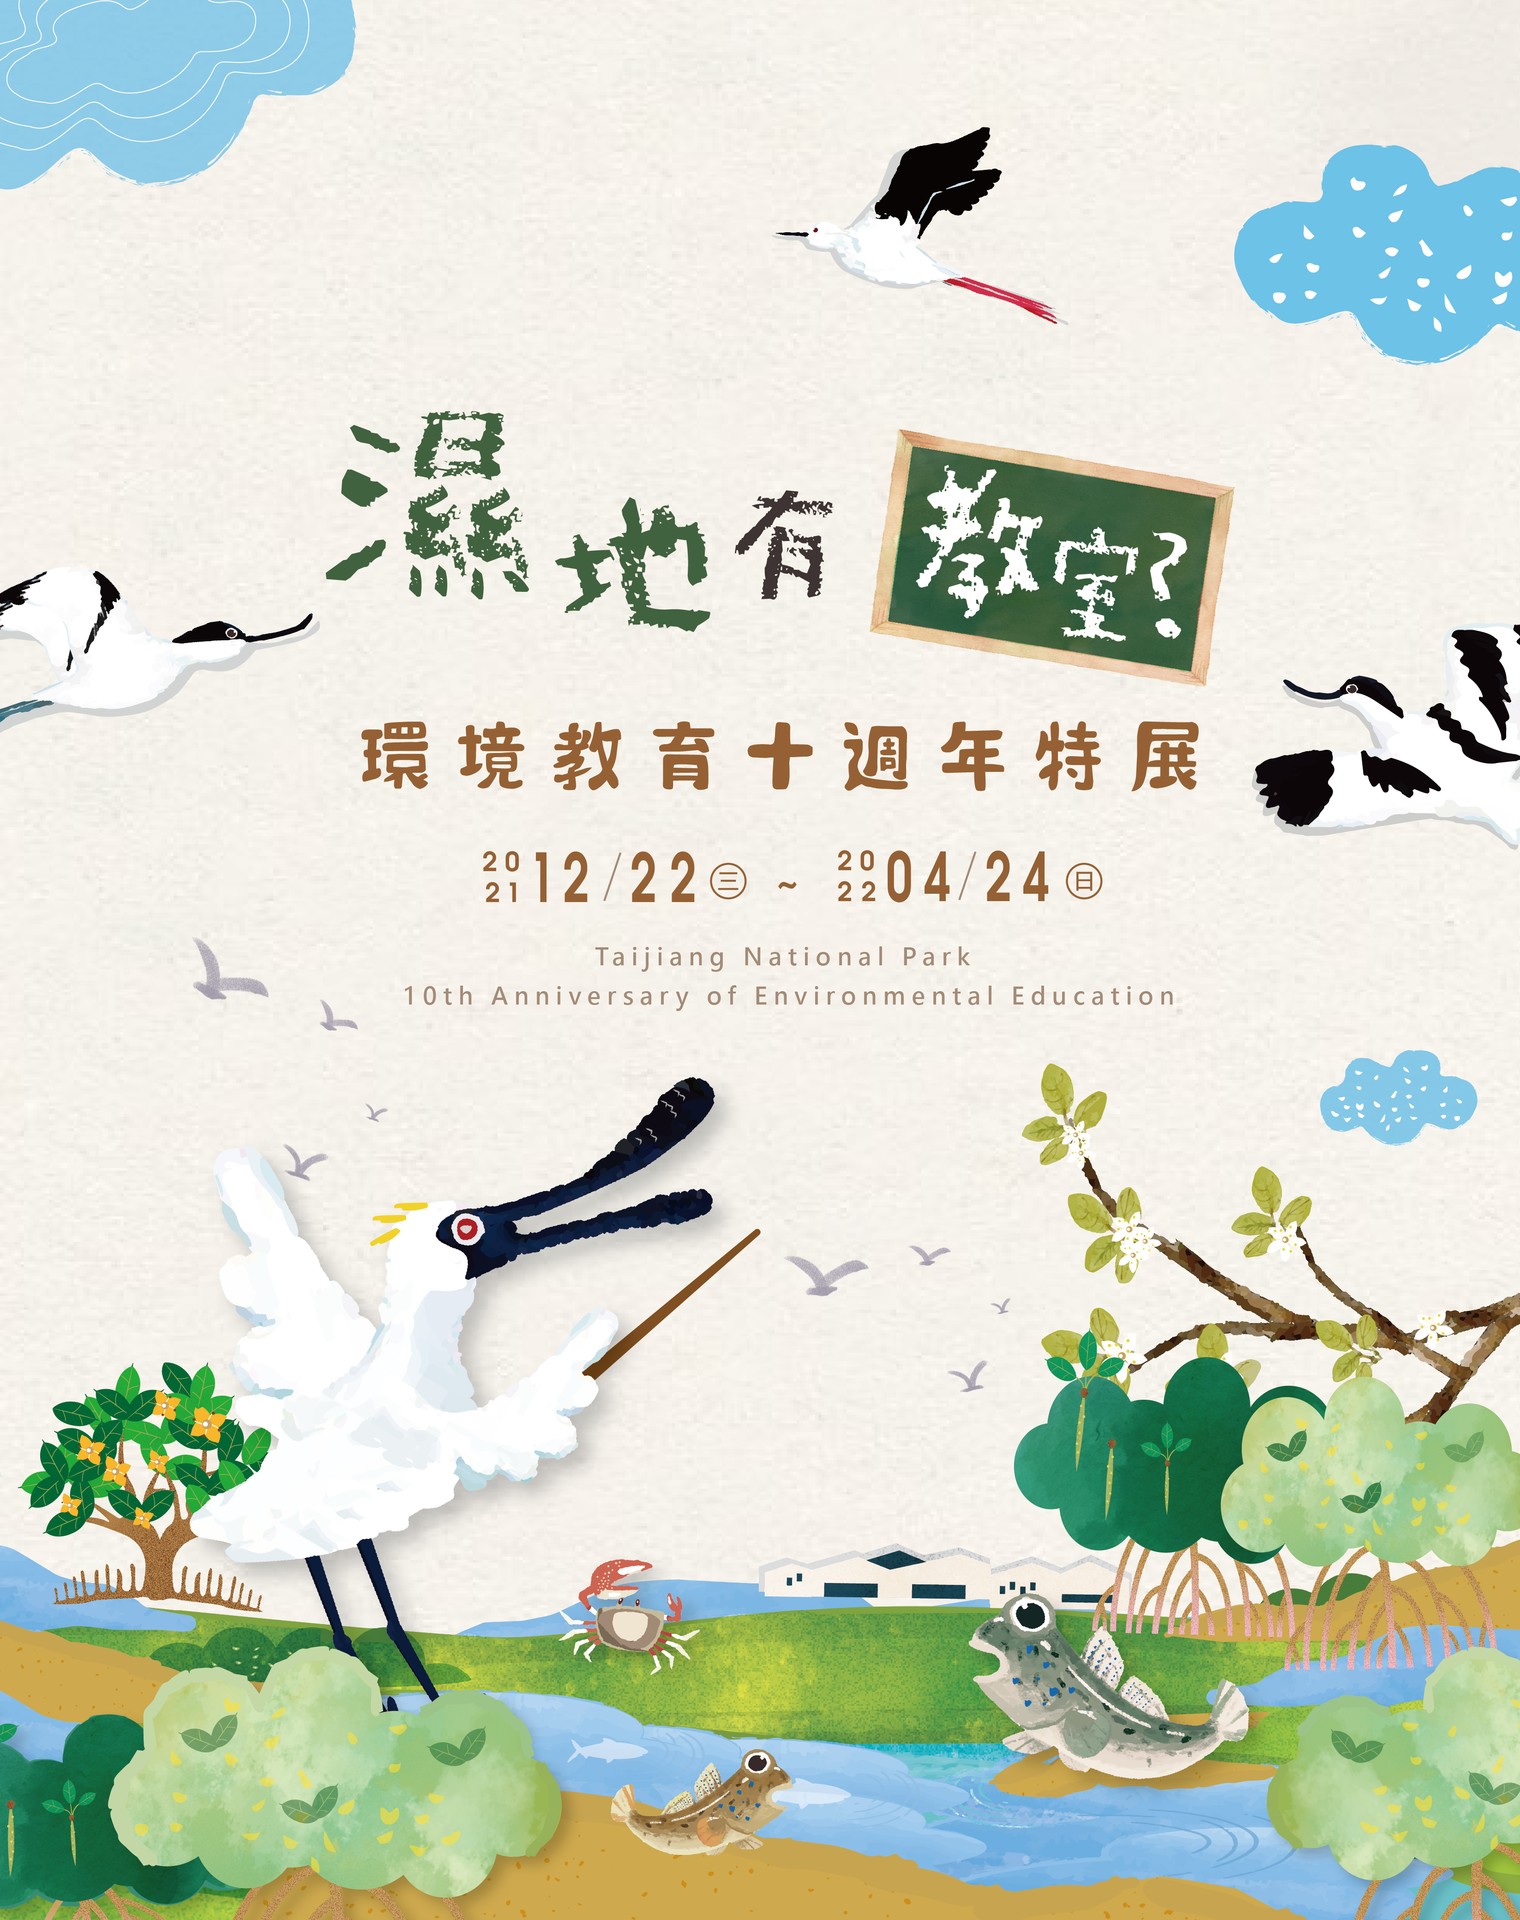 「濕地有教室？―台江國家公園環境教育十週年特展」 邀請您一同走入濕地的大教室